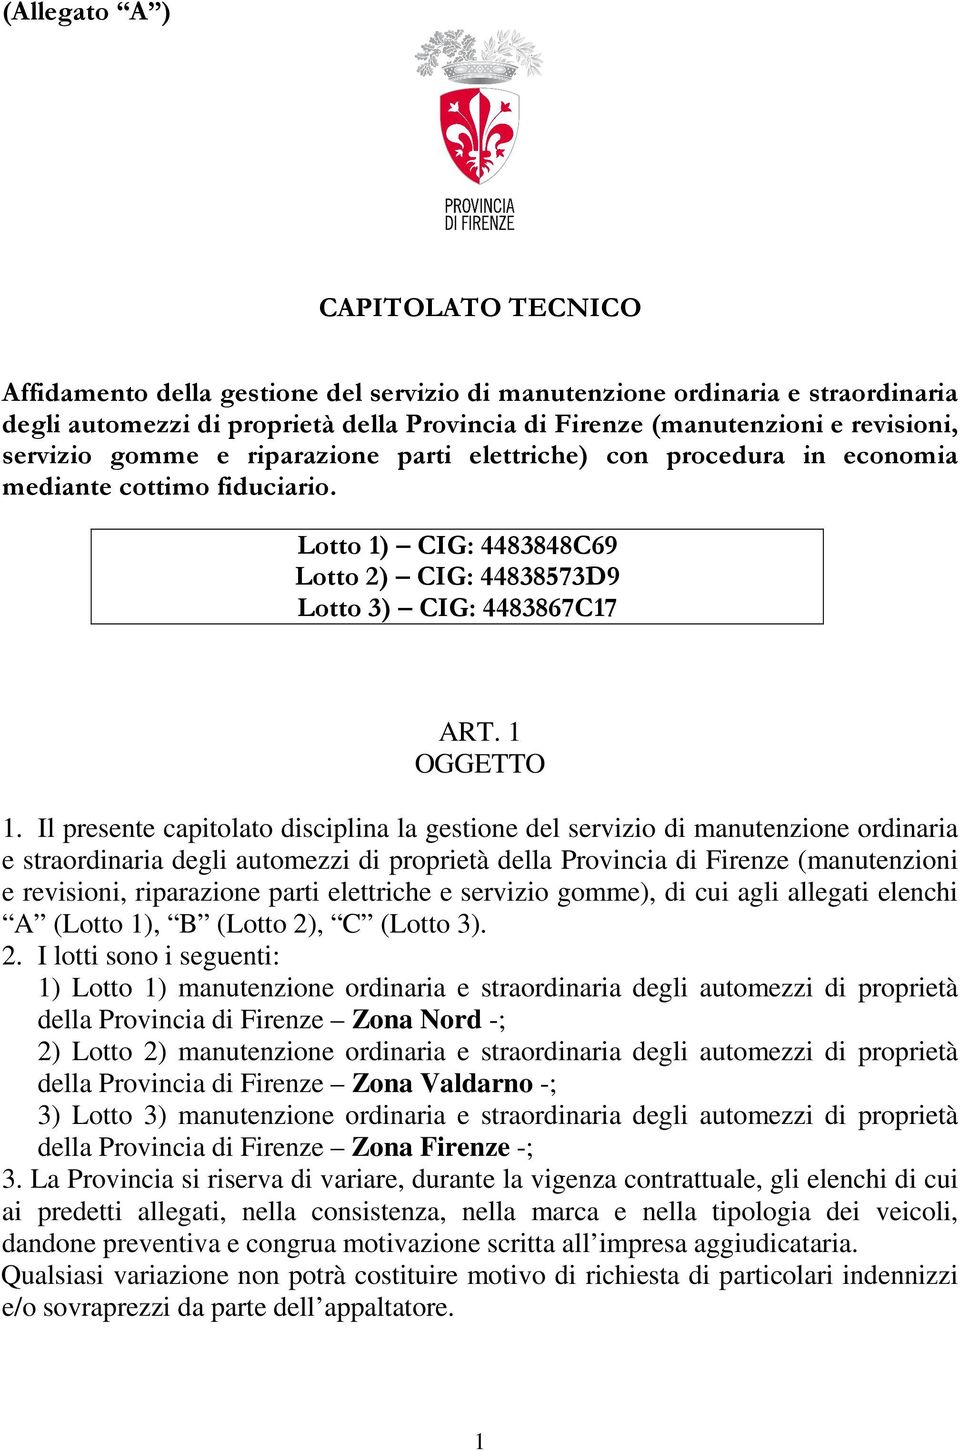 Il presente capitolato disciplina la gestione del servizio di manutenzione ordinaria e straordinaria degli automezzi di proprietà della Provincia di Firenze (manutenzioni e revisioni, riparazione